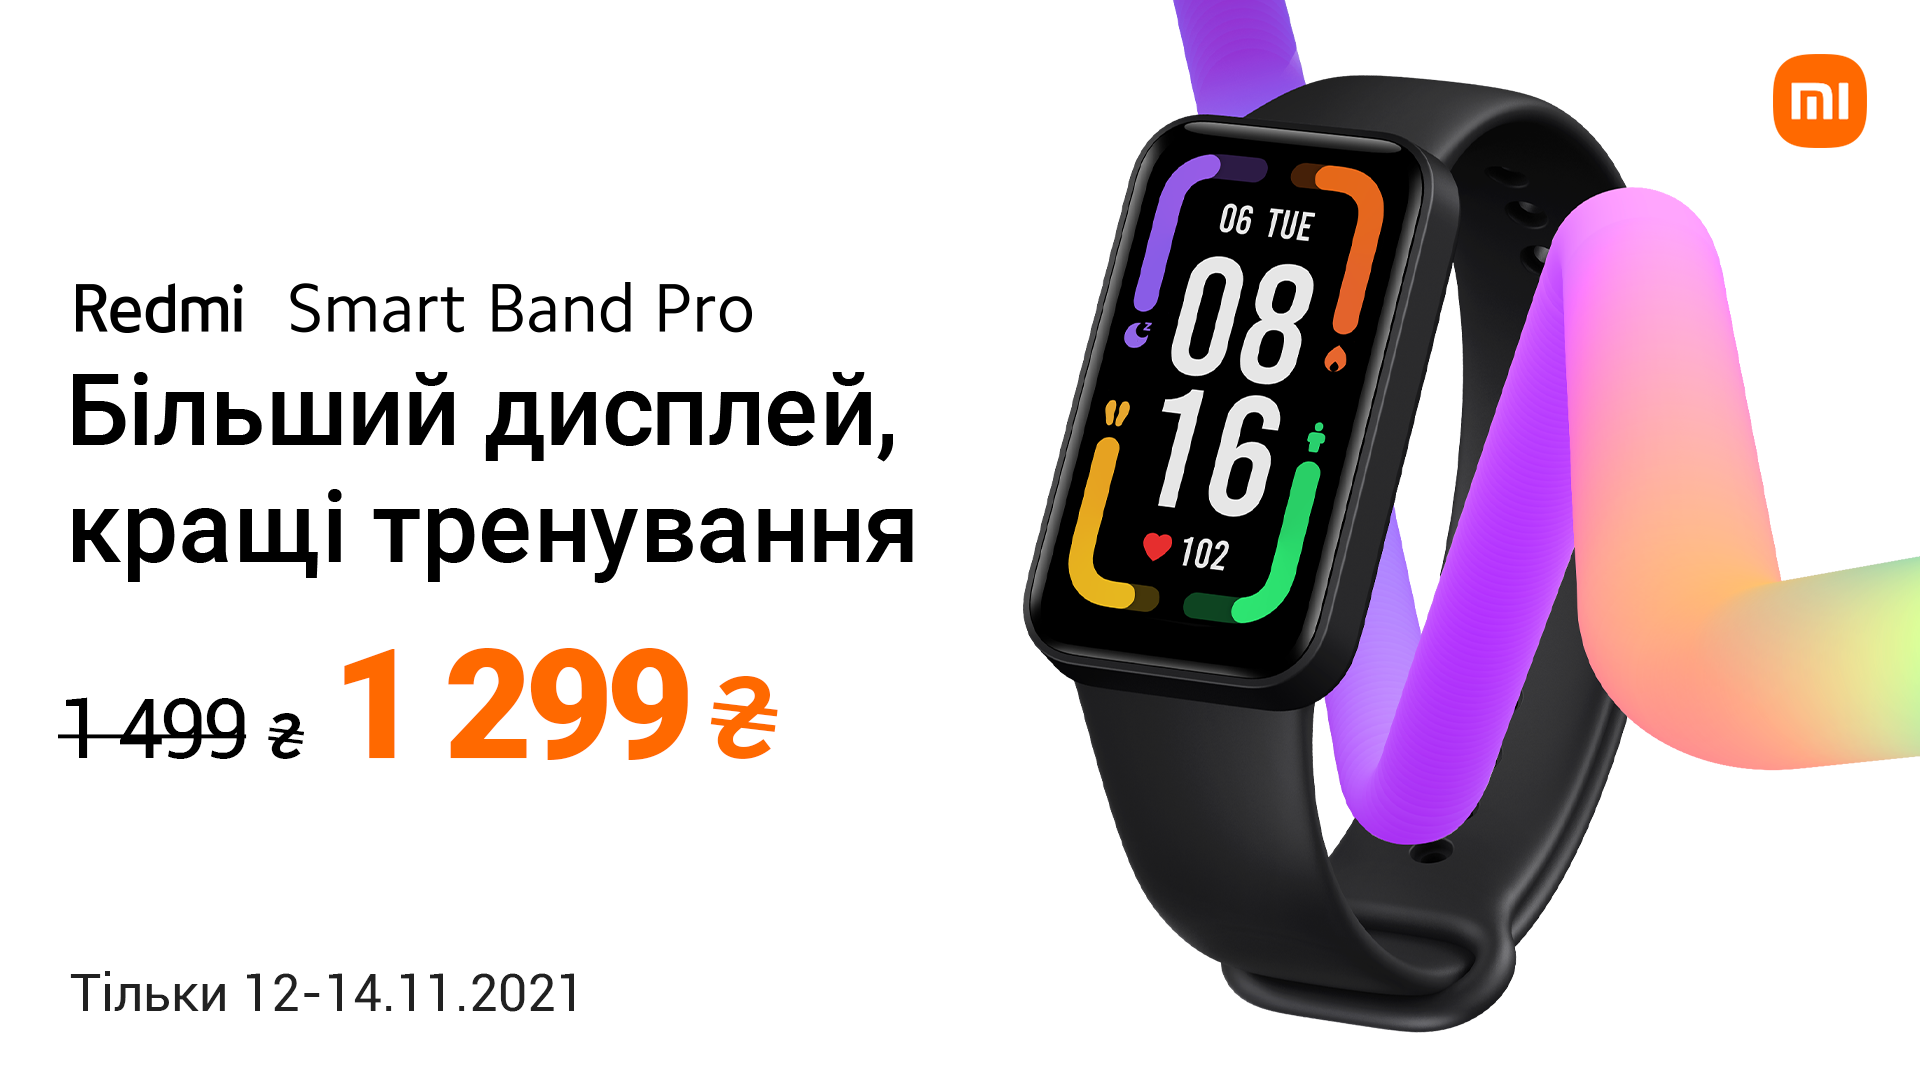 Redmi Smart Band Pro надійшов у продаж в Україні за акційною ціною 1 299 грн